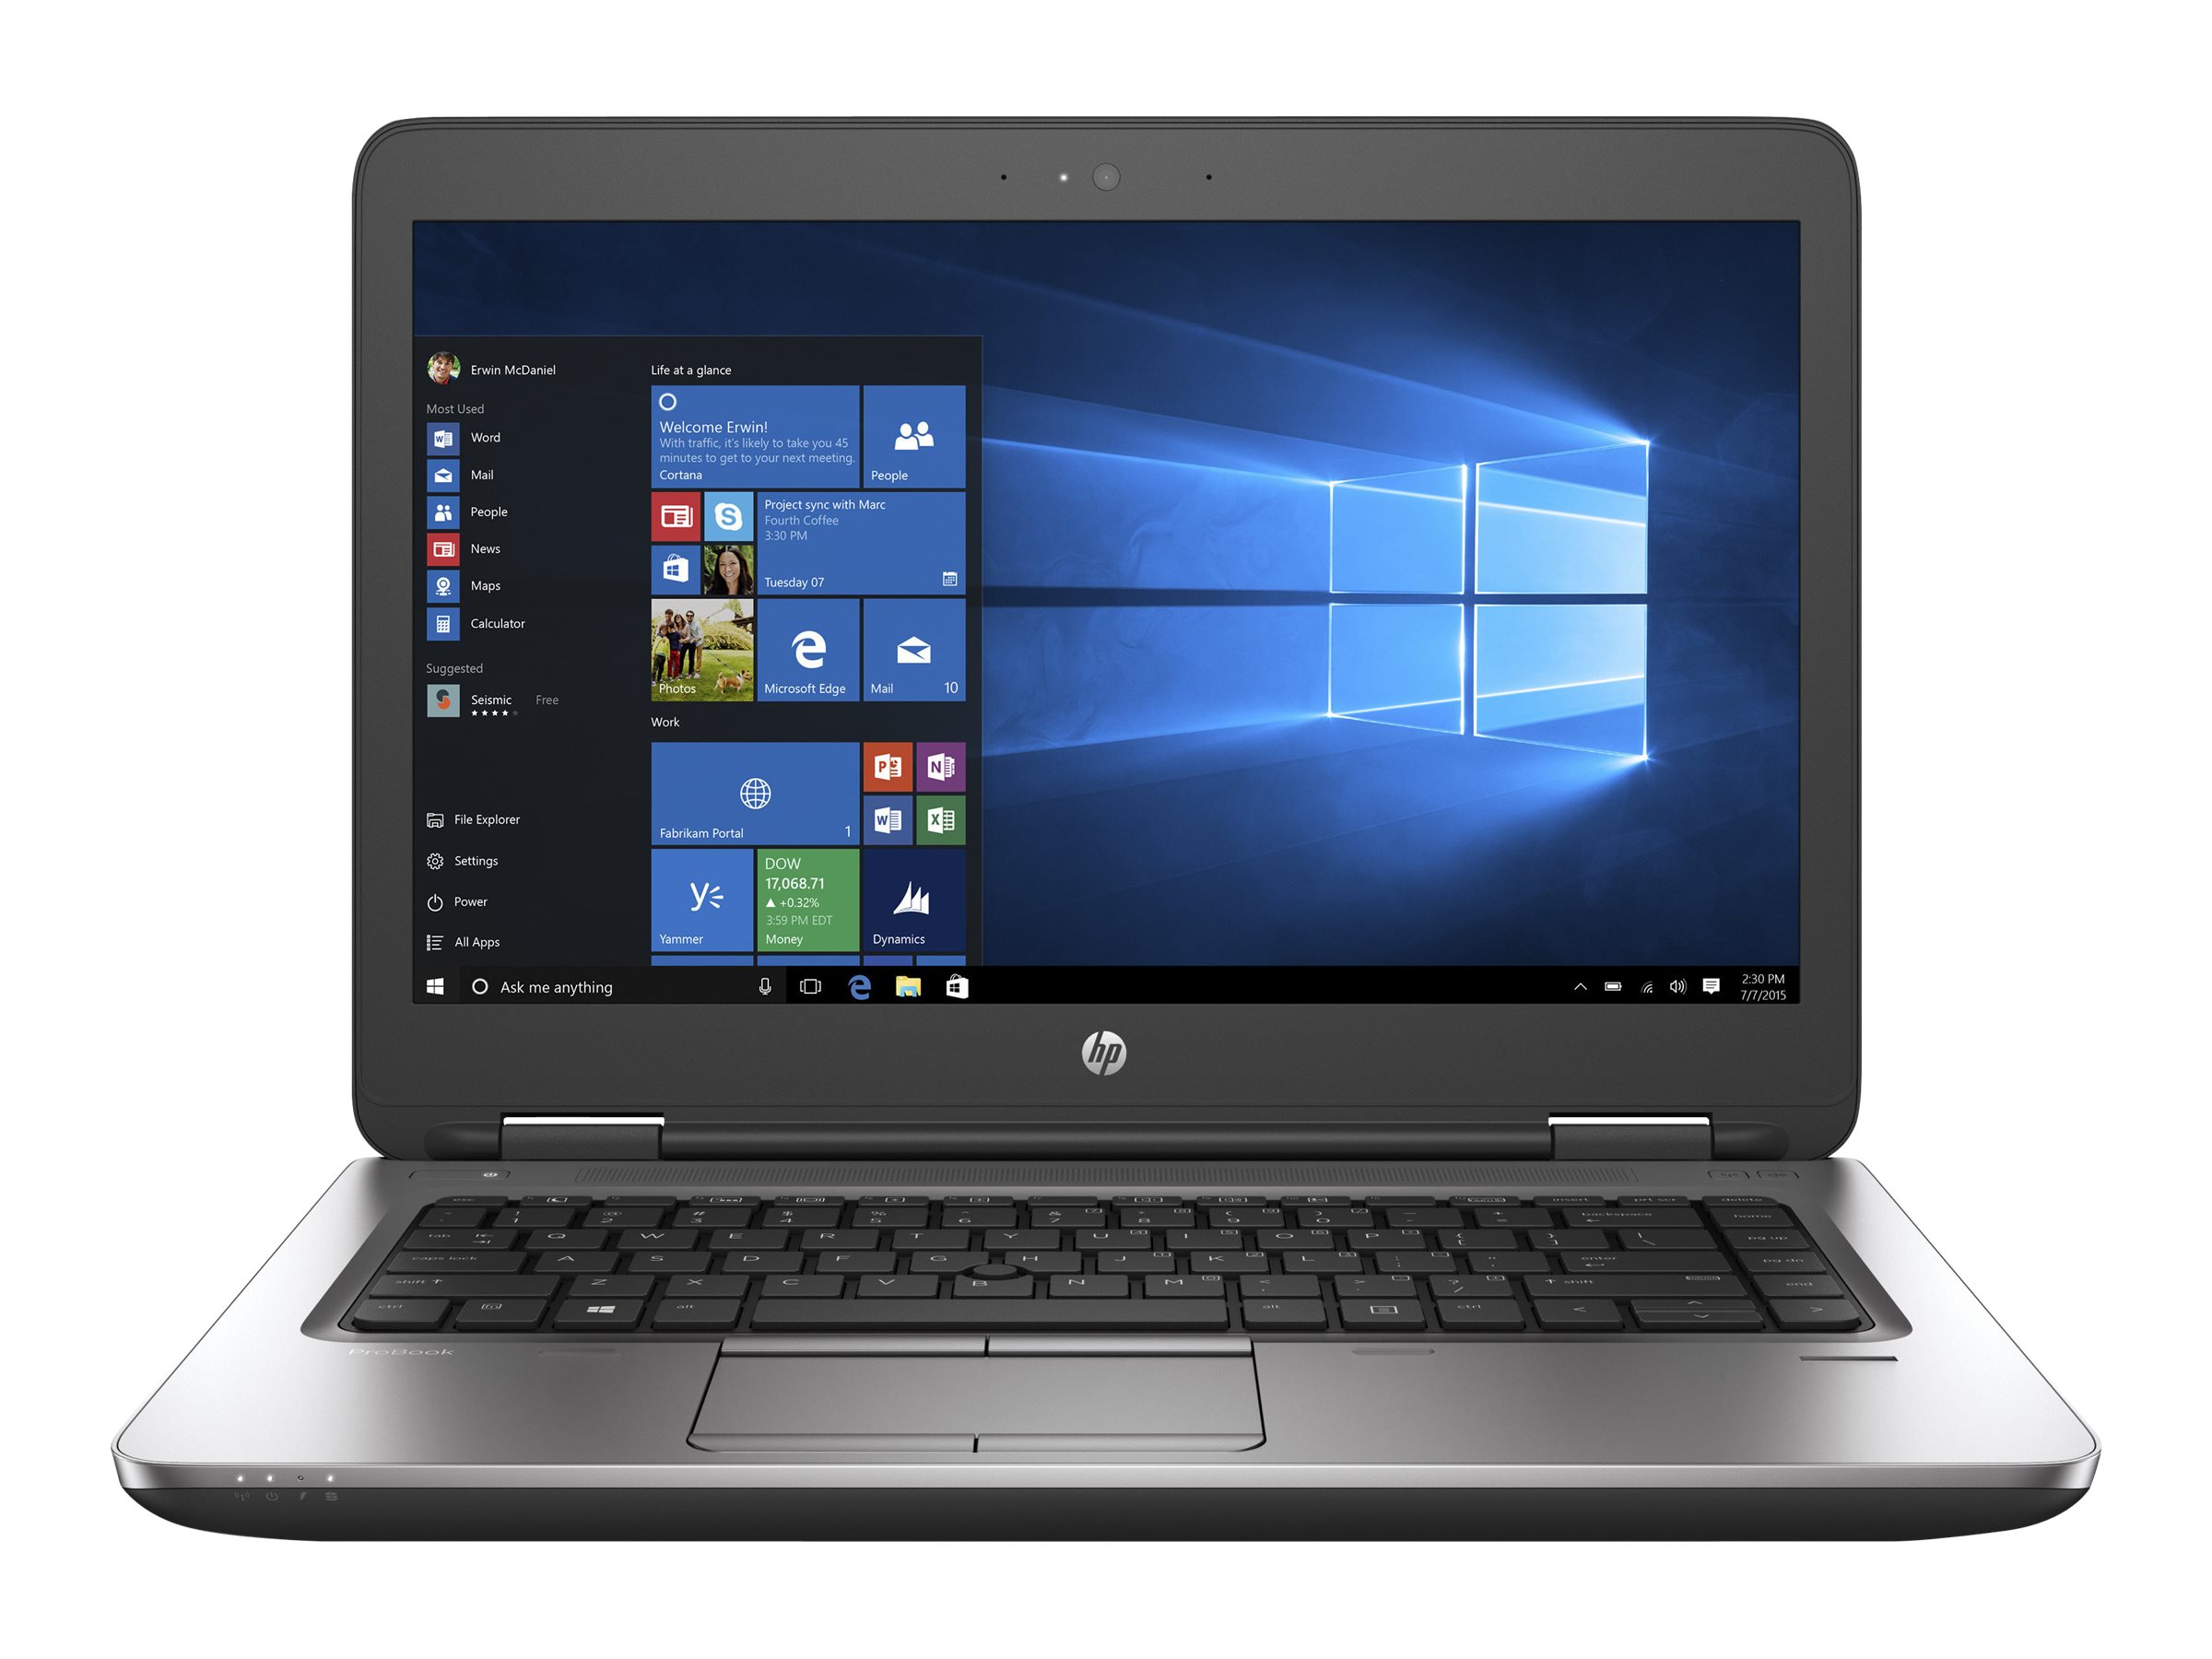 HP ProBook 645 G2 Notebook